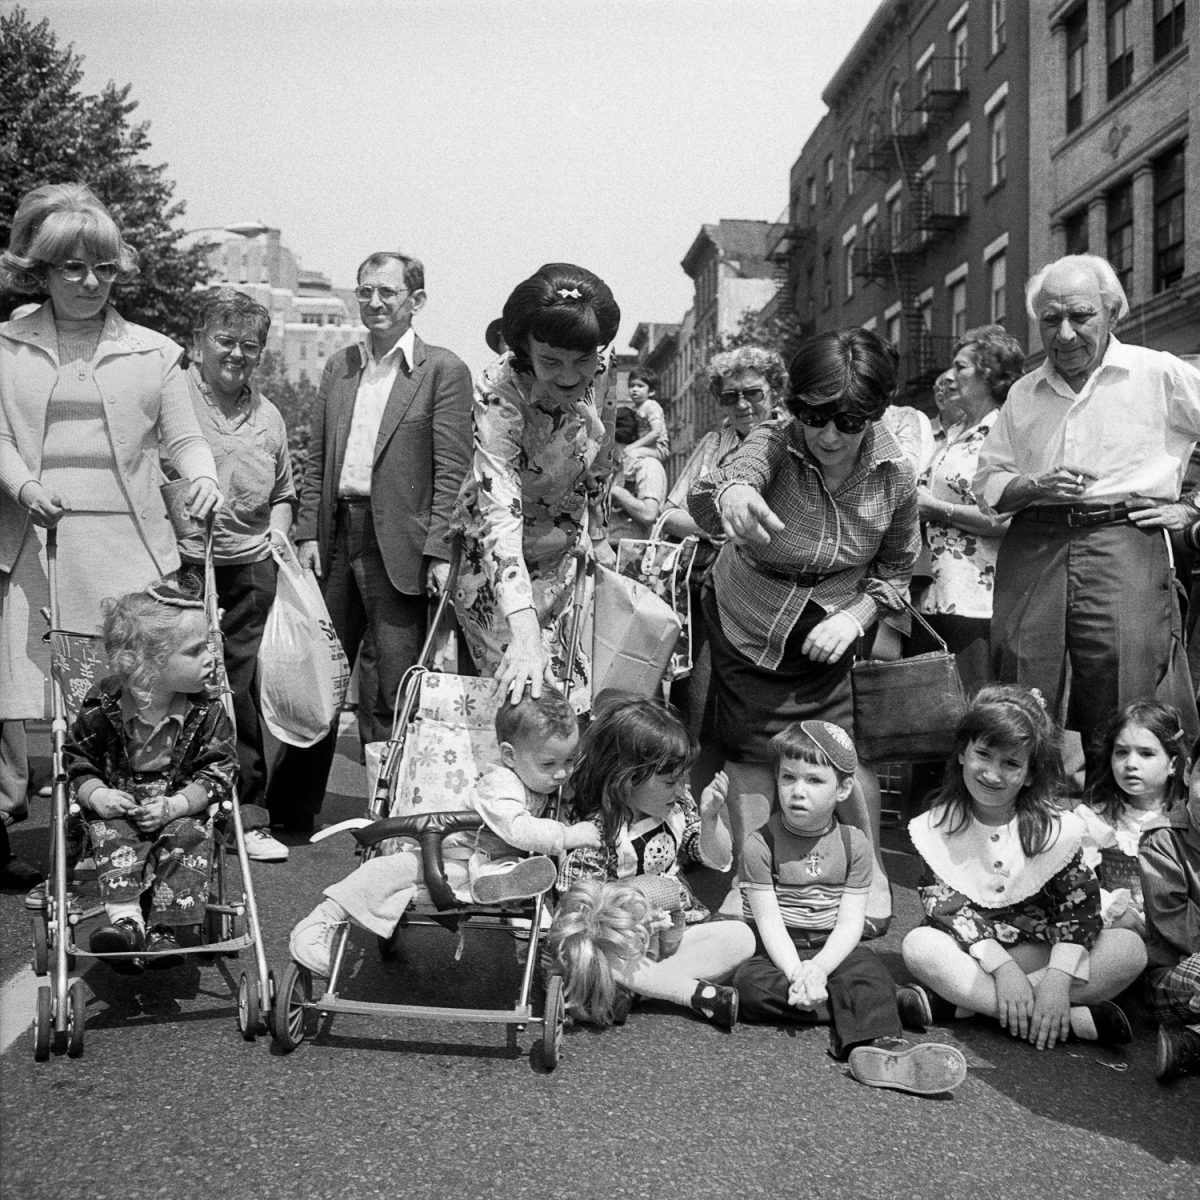 Lower East Side Street Festival, 1978